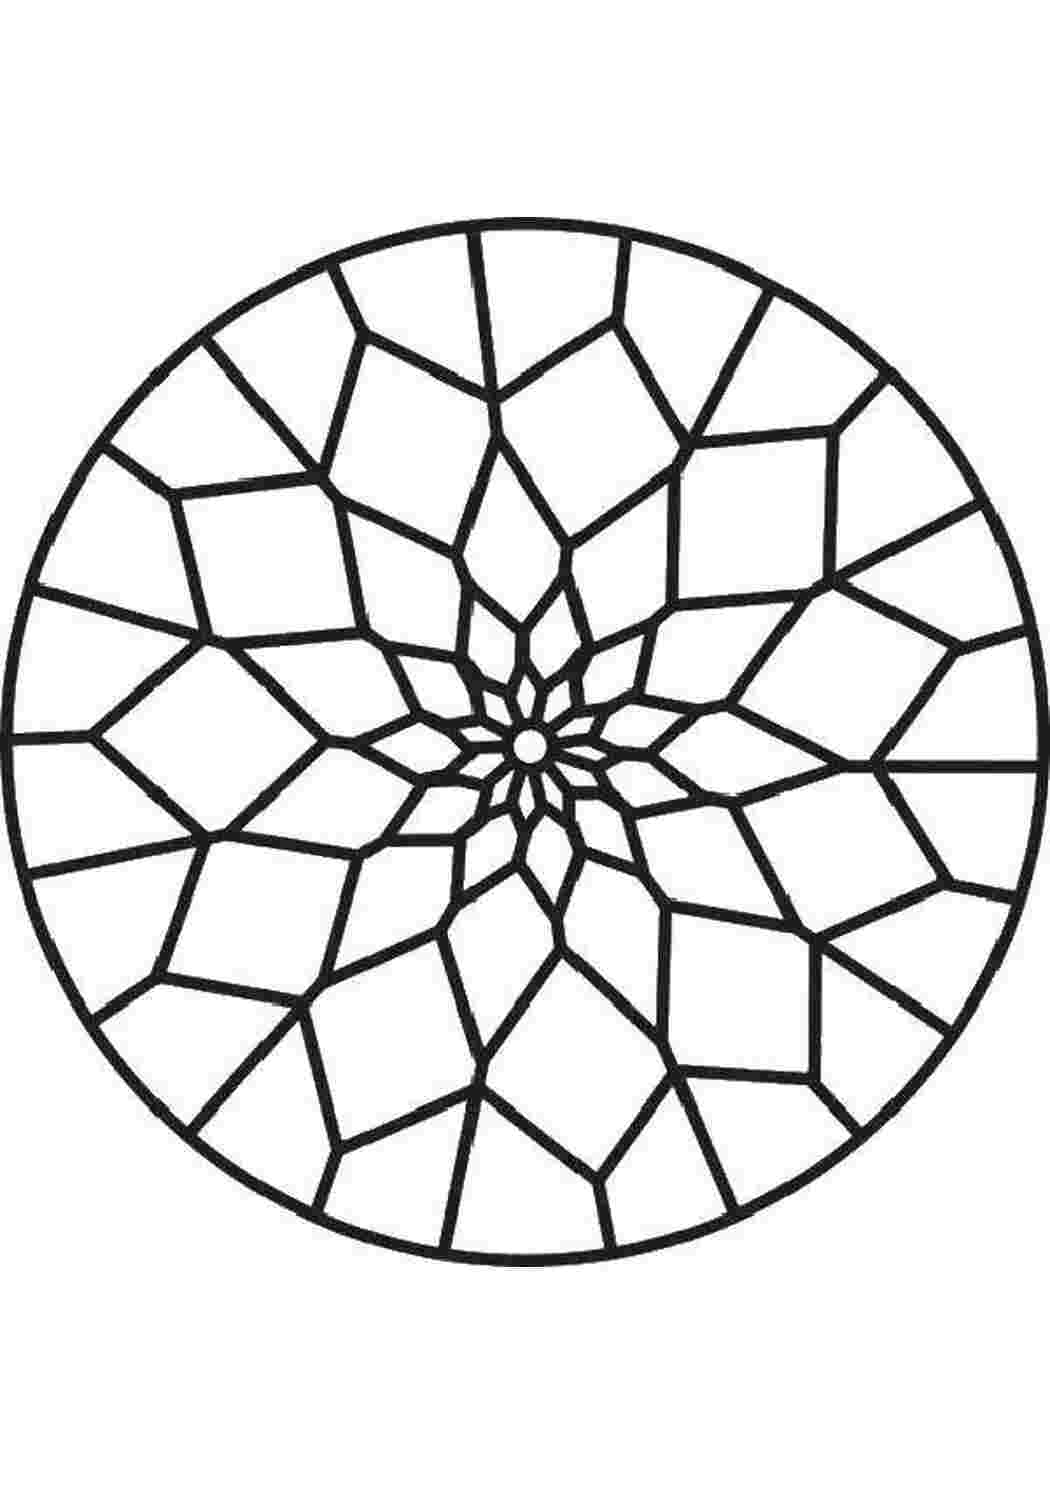 Разукрашиваем тарелку геометрический орнамент